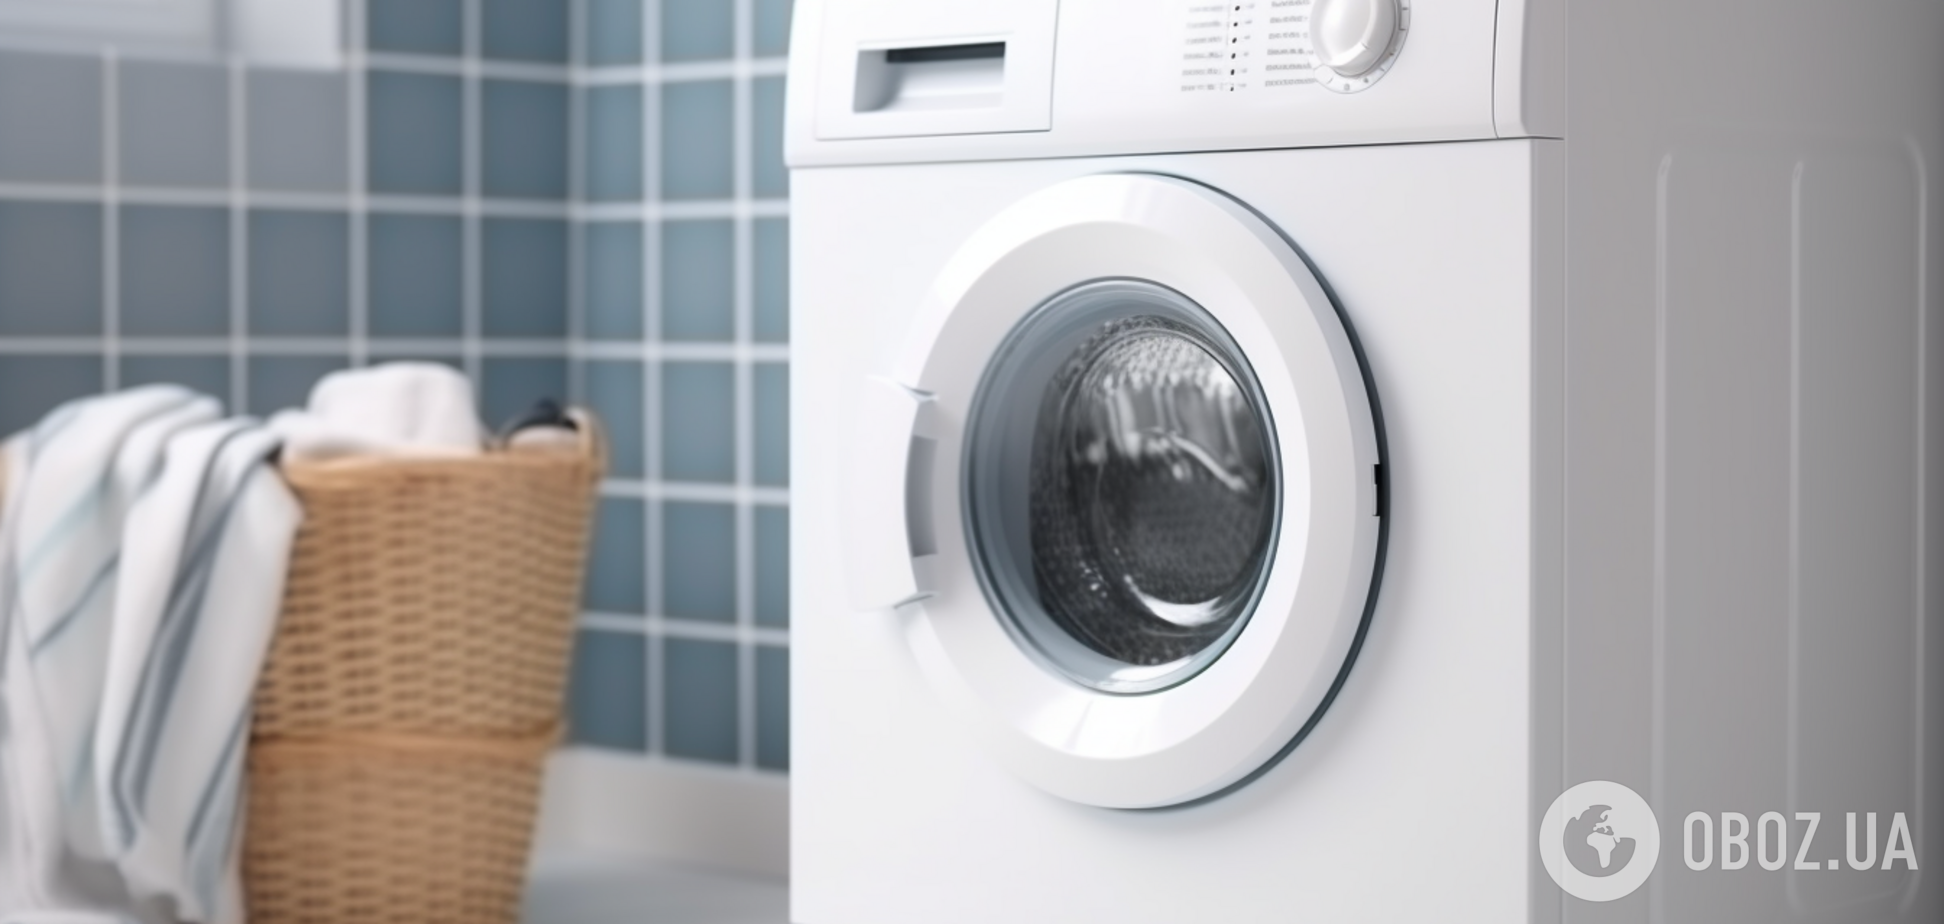 Одяг буде свіжим, як ніколи: у пральній машинці знайшли 'приховану' рятівну кнопку